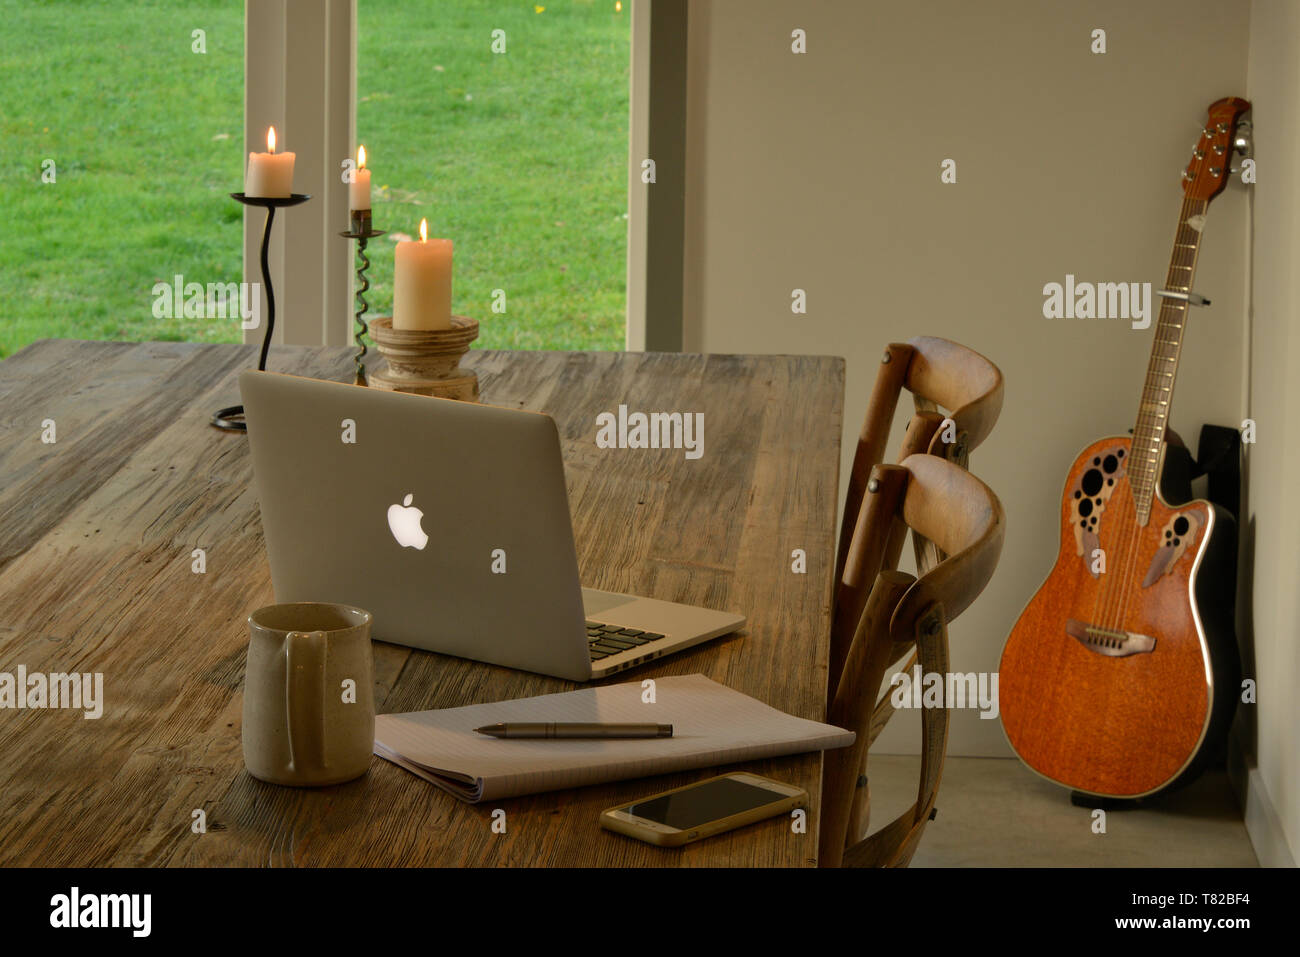 Arbeiten von zu Hause aus. Ein rustikaler Holztisch mit einem Laptop, Kerzen, einen schreibblock füllen Sie die Szene. Eine Ovation Gitarre lehnt sich gegen die Wand. Stockfoto